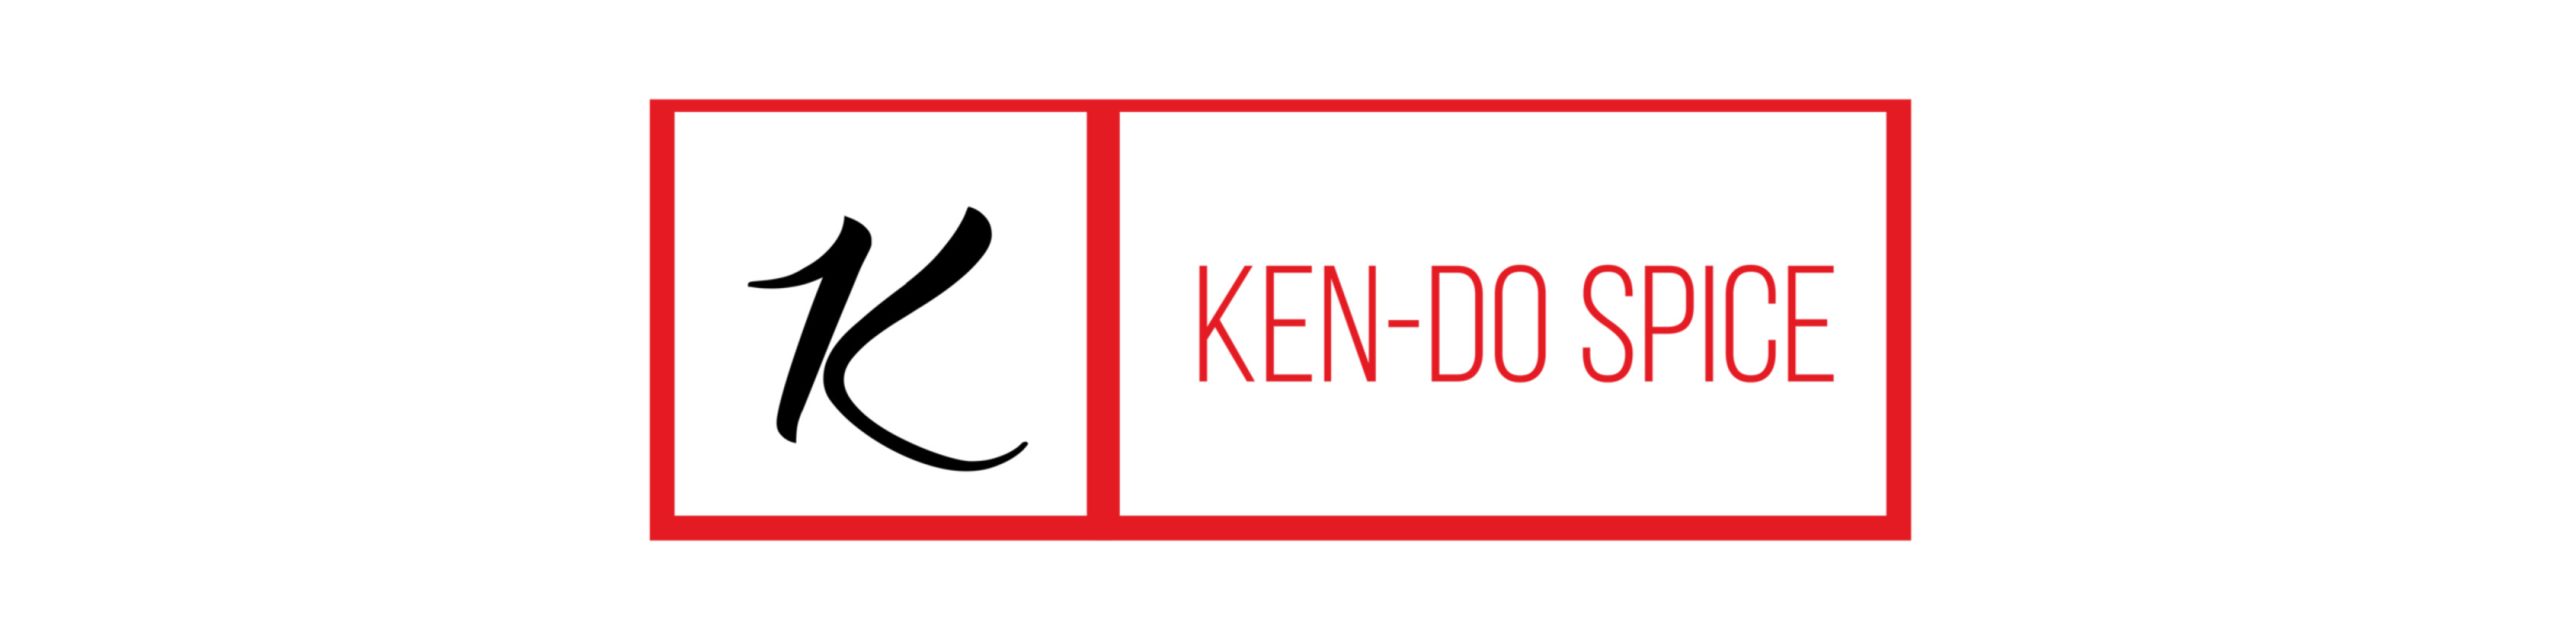 Ken-Do Spice, LLC